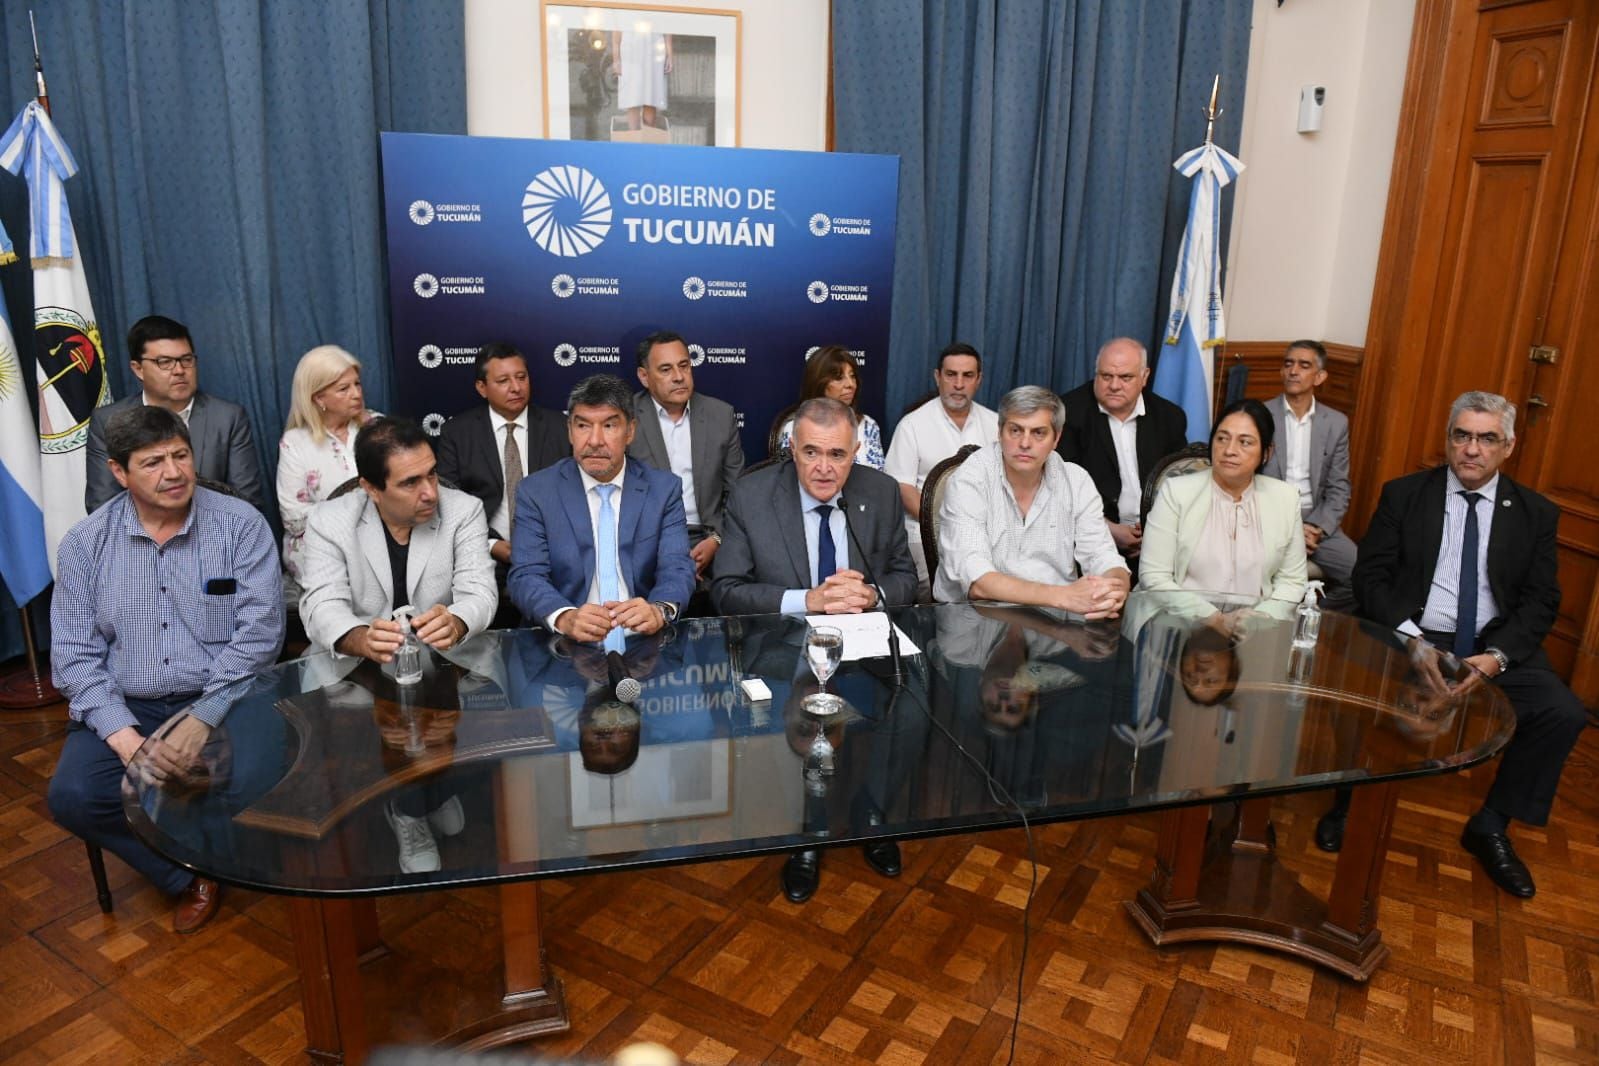 Osvaldo Jaldo brindó una conferencia en la Casa de Gobierno, acompañado de los ministros del Poder Ejecutivo y diputados nacionales